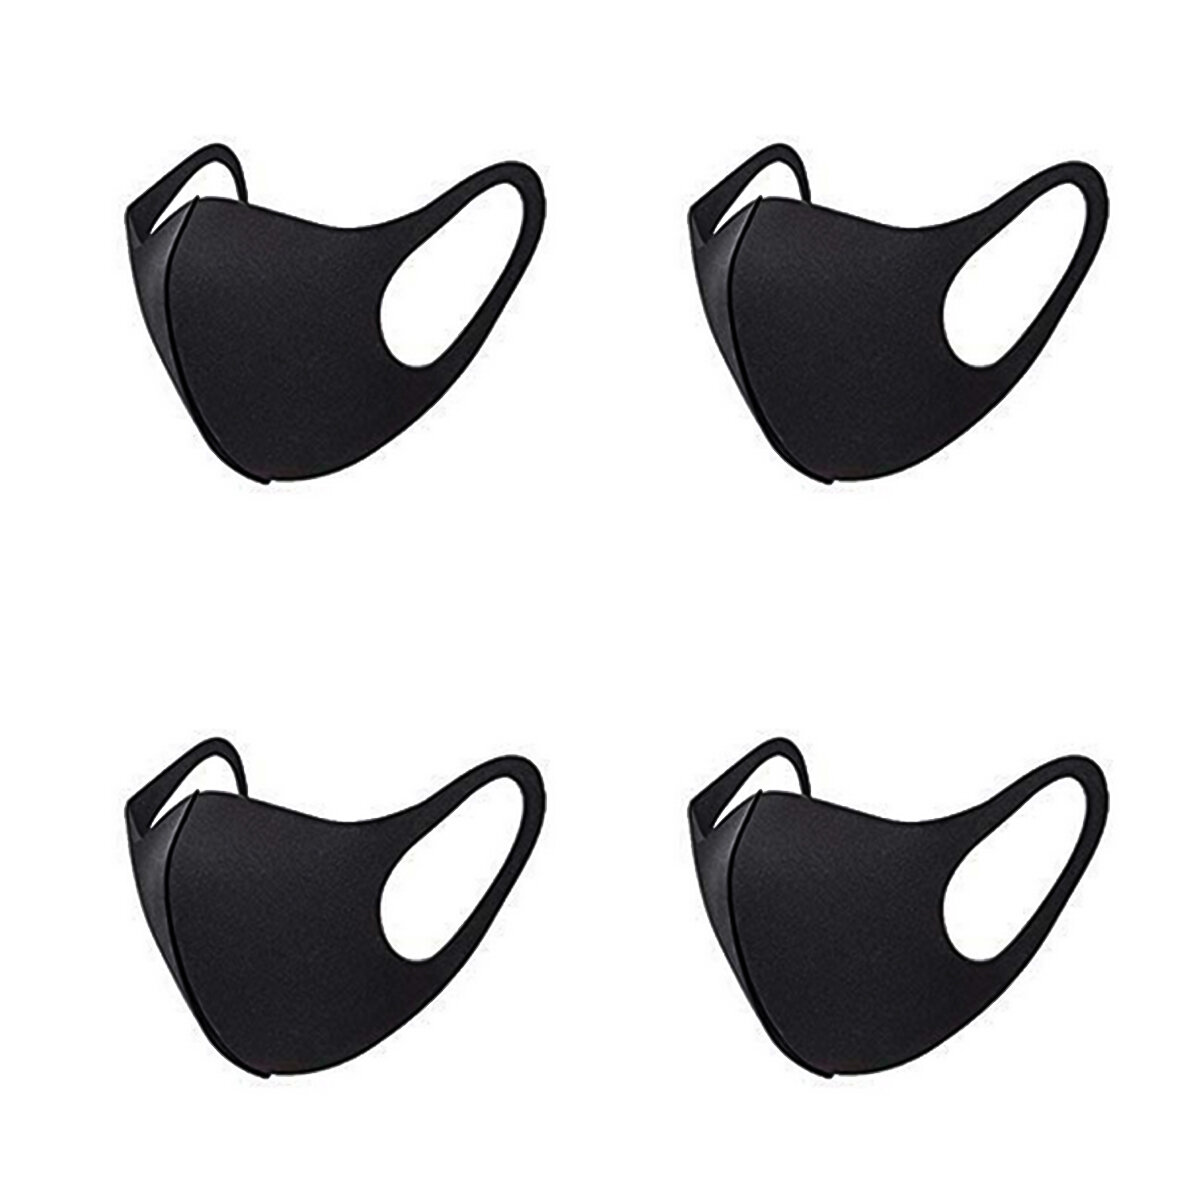 4 stuks mode beschermend gezichtsmasker anti-stofmasker wasbaar herbruikbaar voor fietsen kamperen r